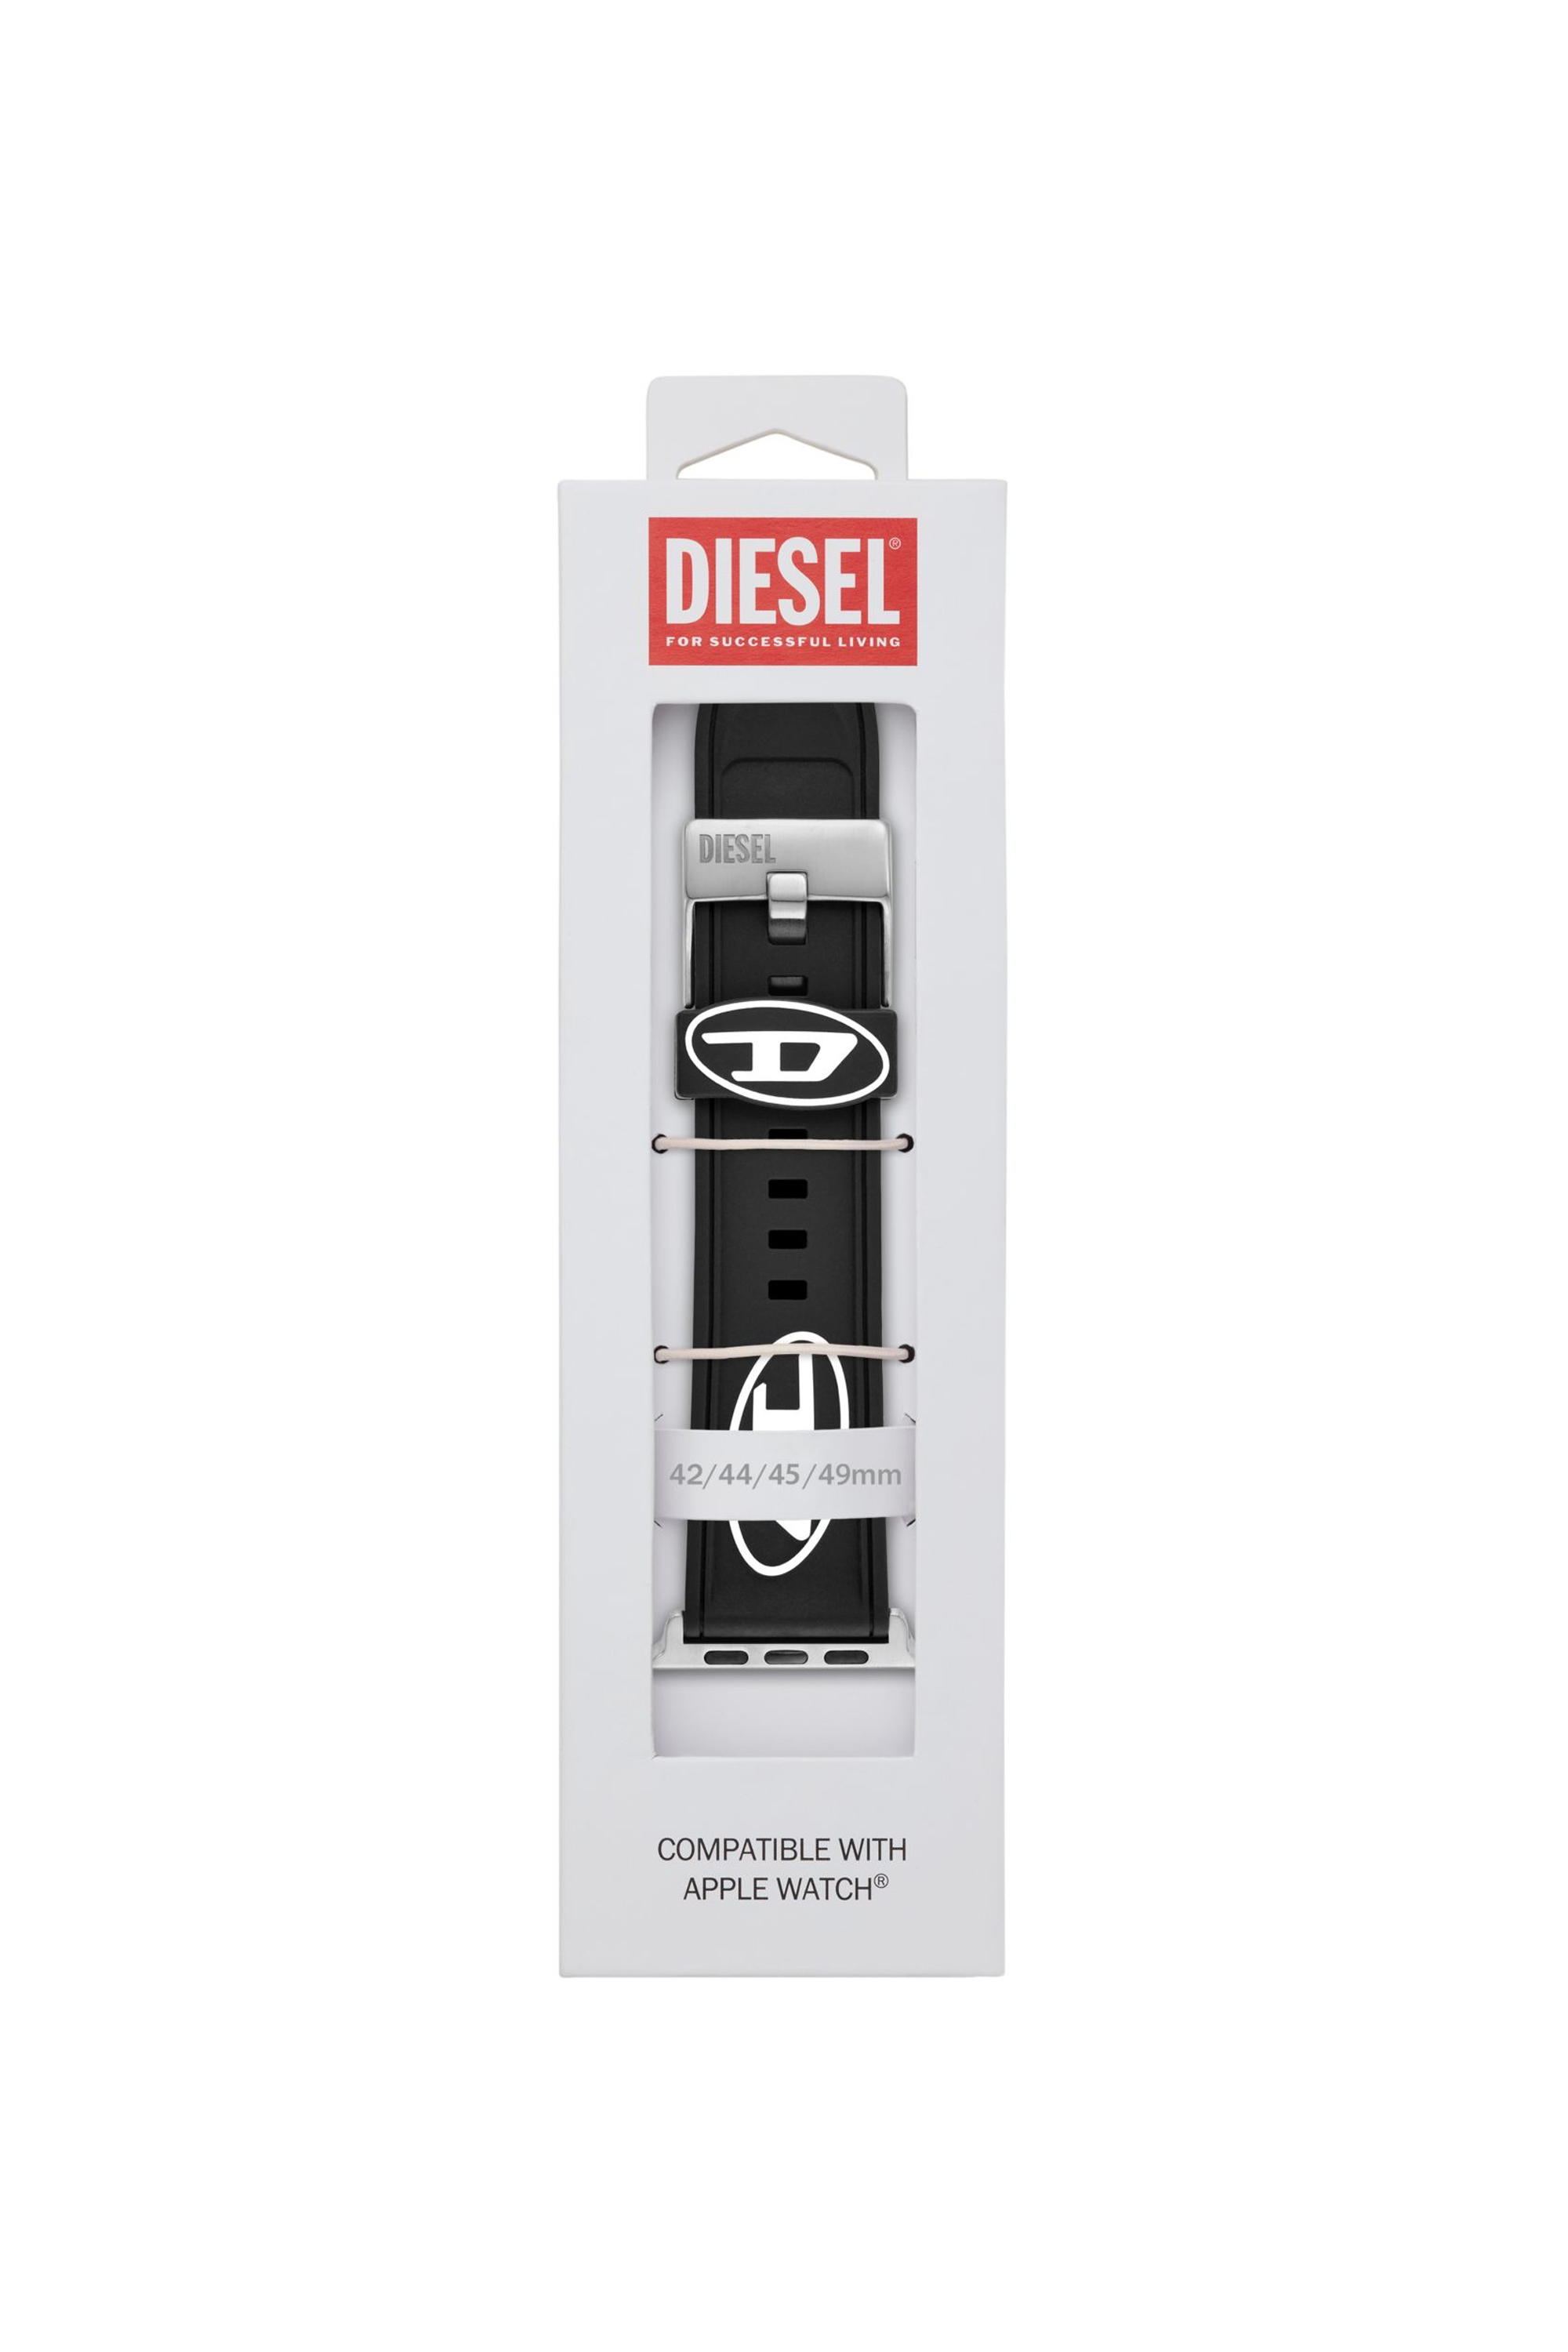 Diesel - DSS0018, Negro - Image 3